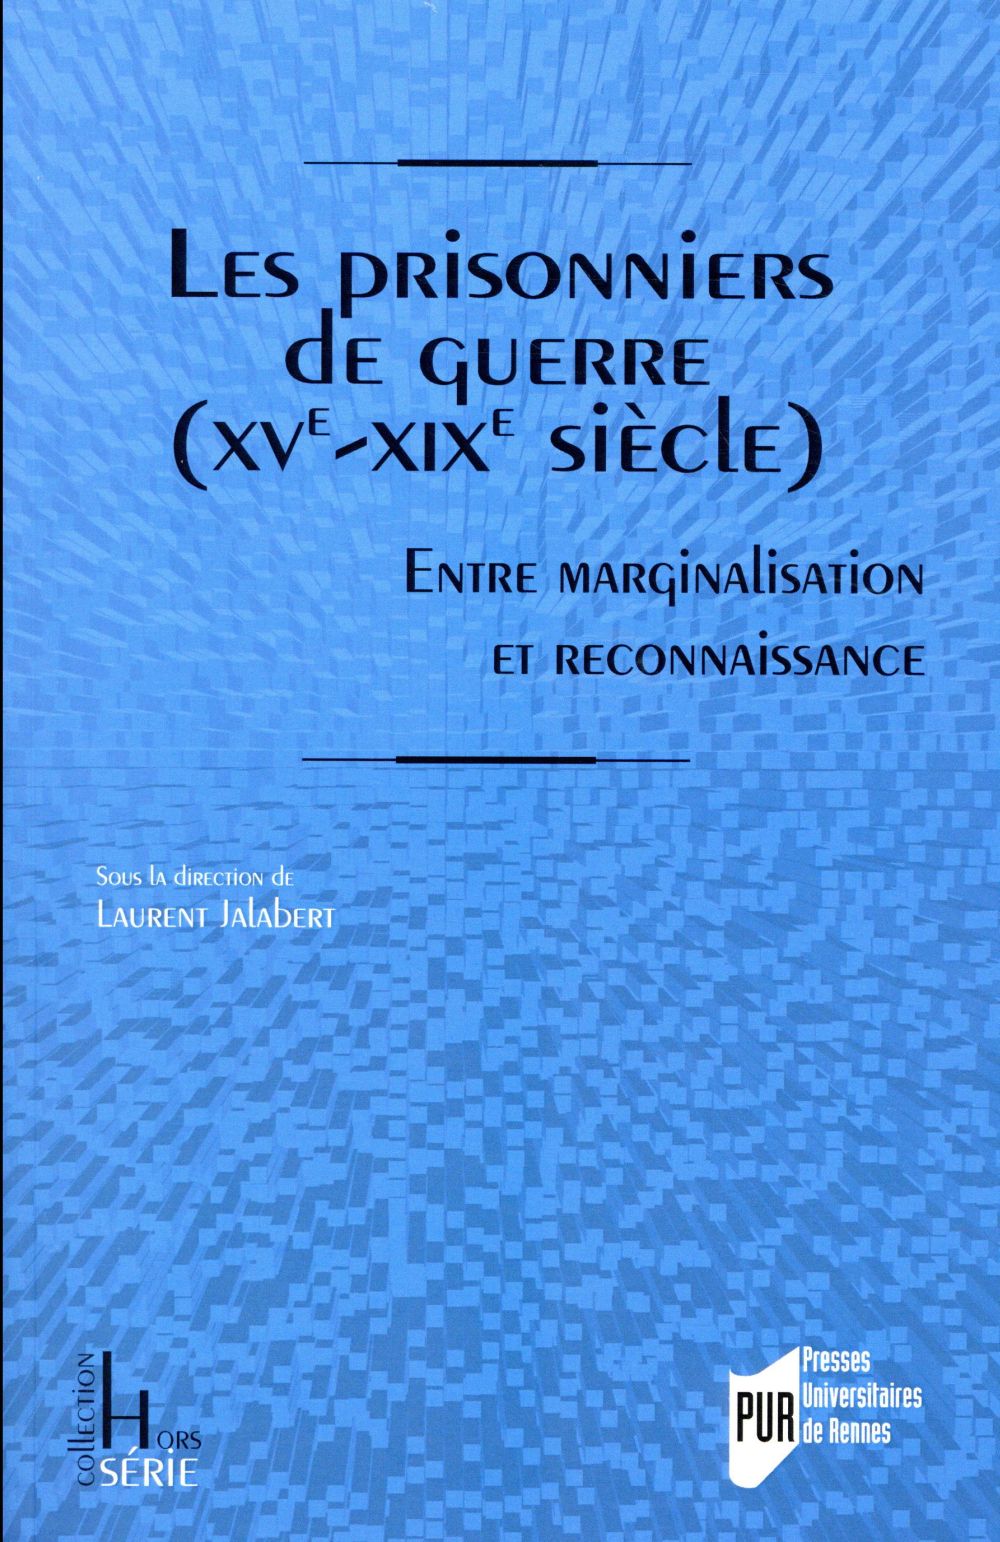 LES PRISONNIERS DE GUERRE (XVE-XIXE SIECLES) - ENTRE MARGINALISATION ET RECONNAISSANCE